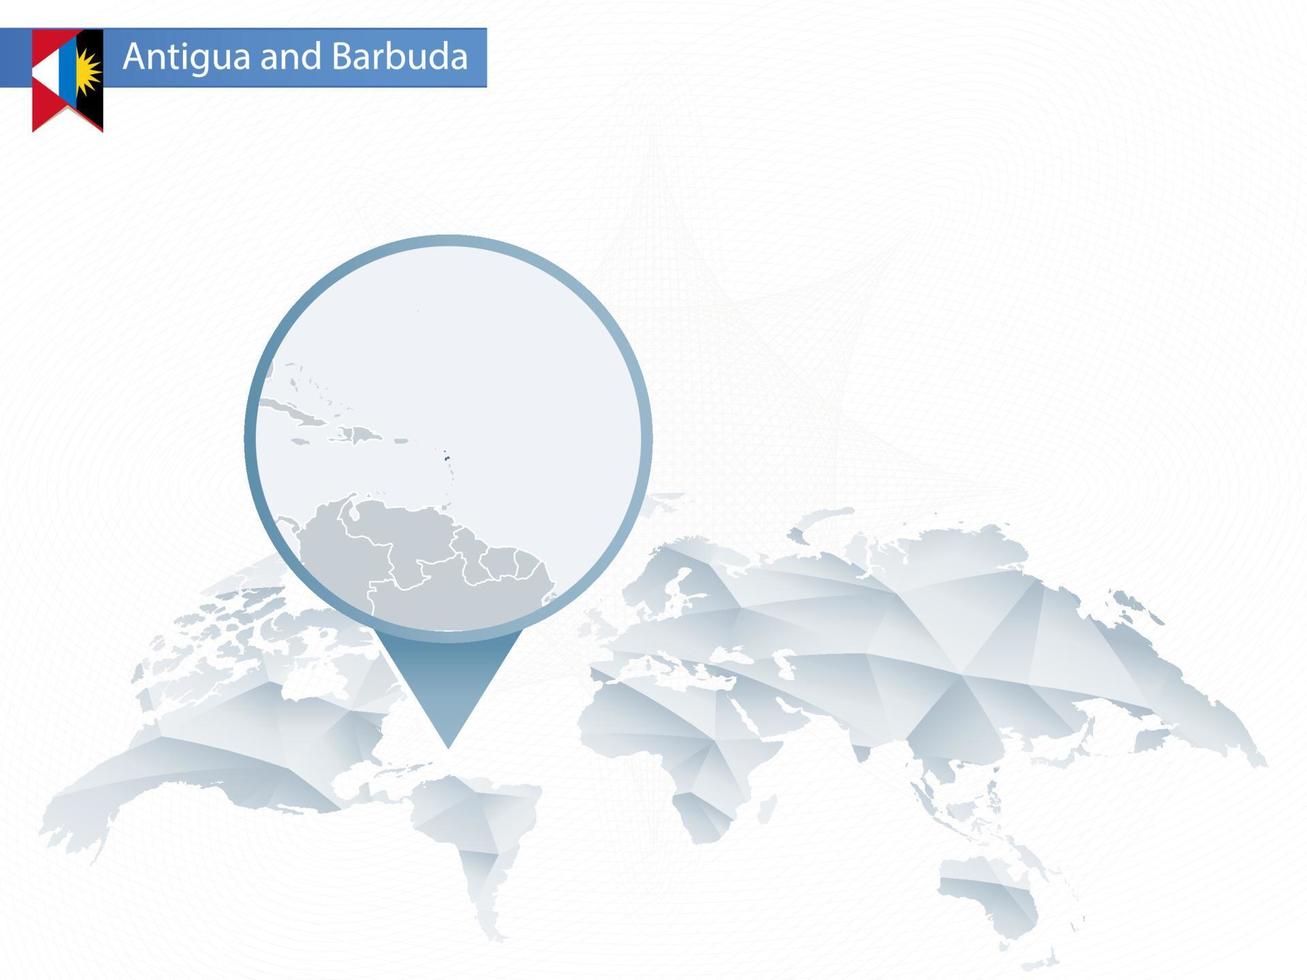 mapa del mundo redondeado abstracto con mapa detallado de antigua y barbuda anclado. vector